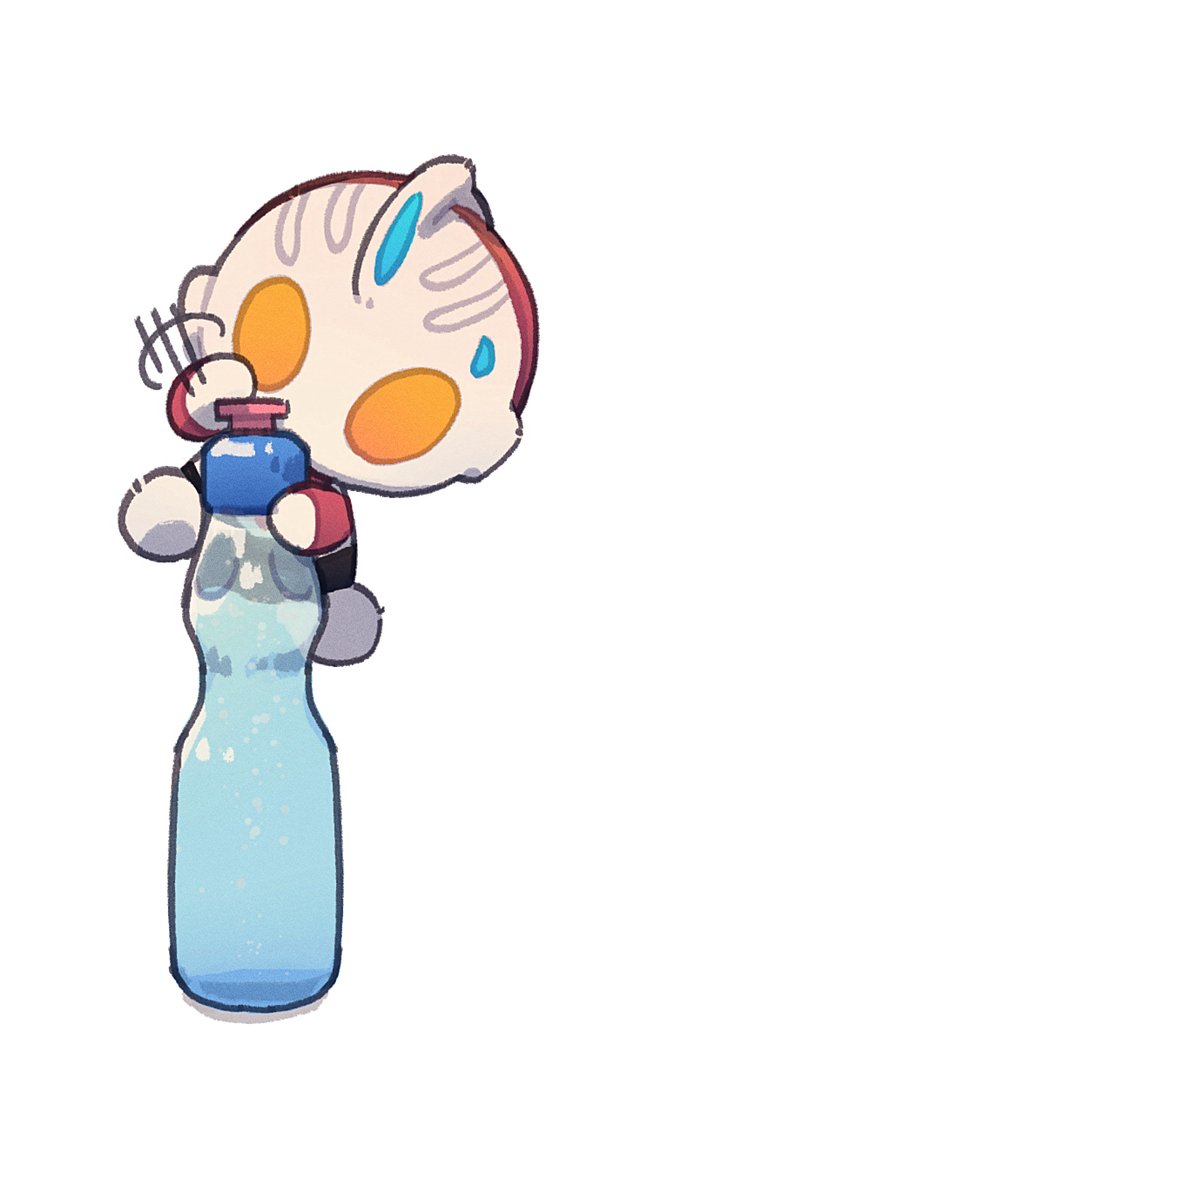 bottle solo white background simple background holding bottle holding chibi  illustration images